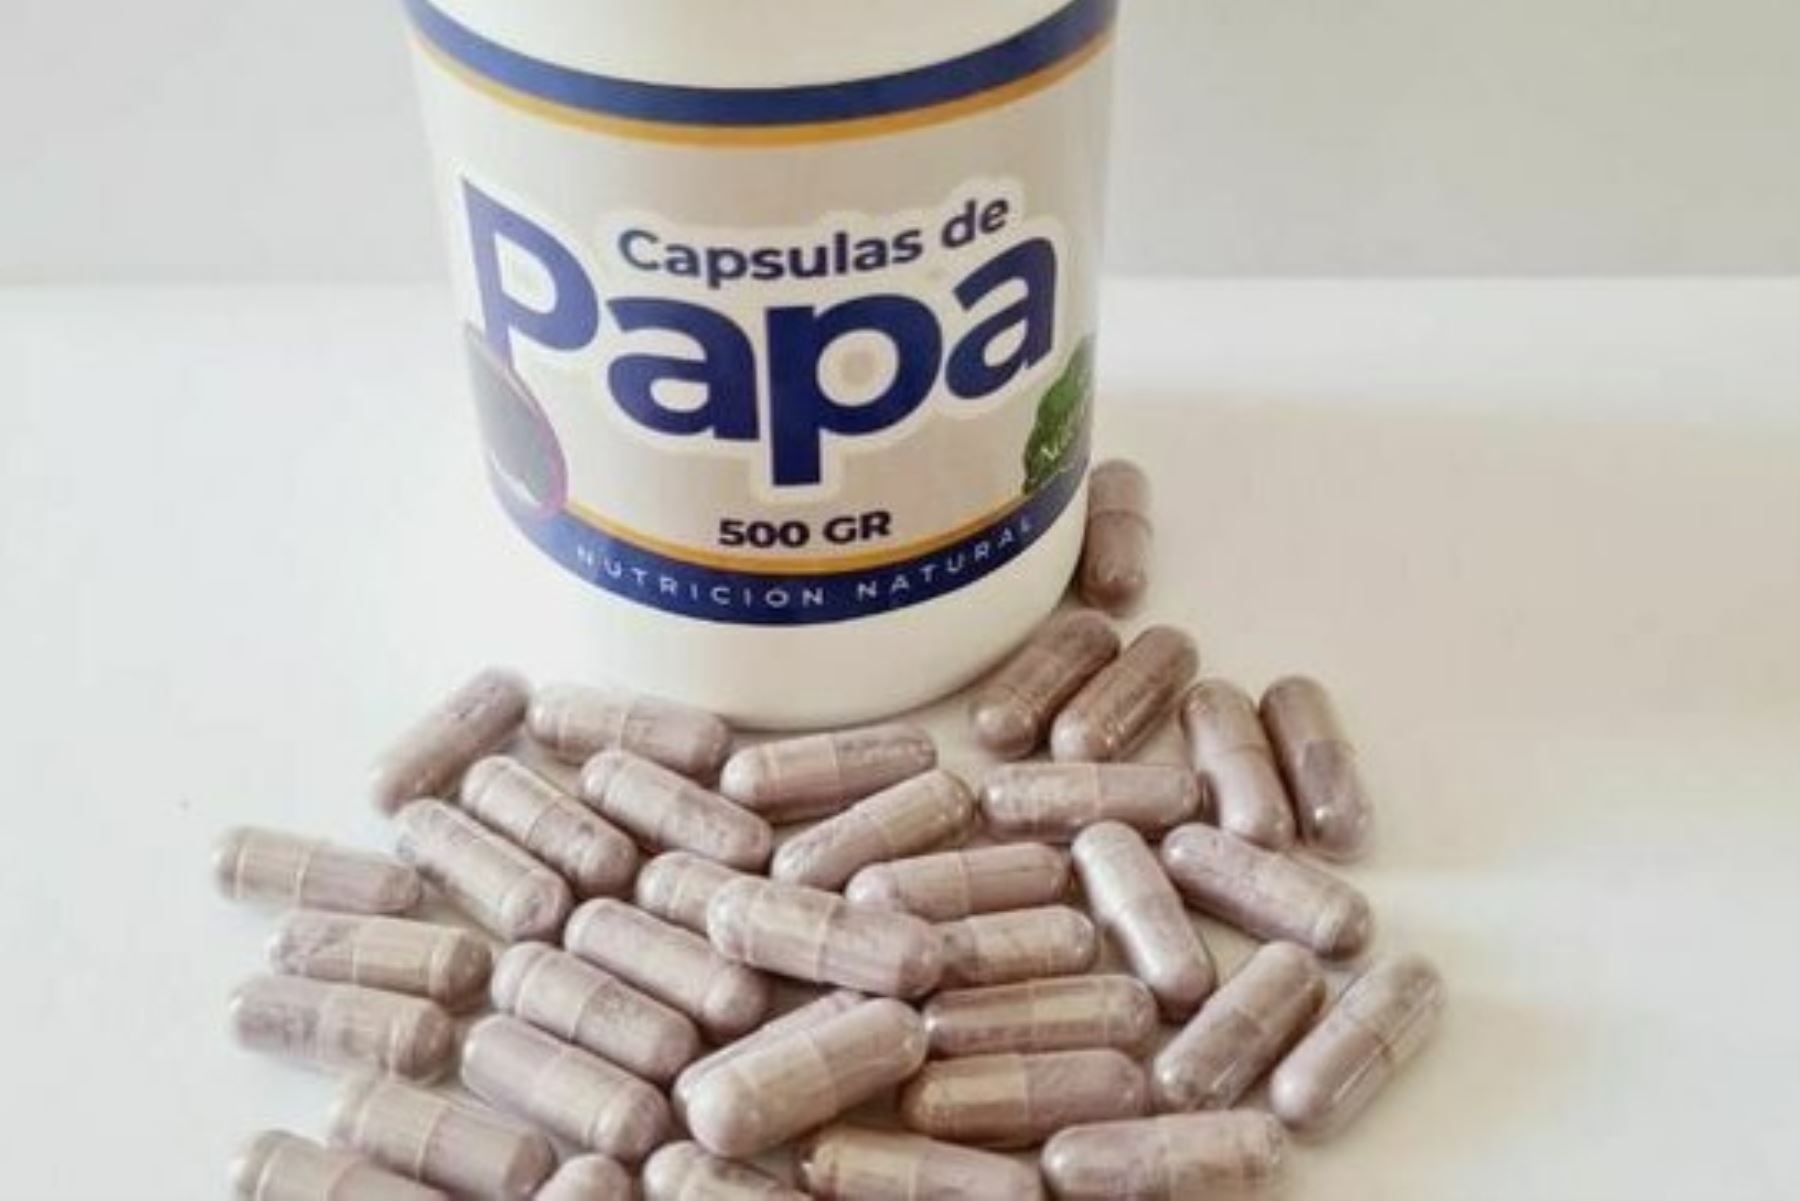 El proyecto denominado “cápsulas de papa” busca microencapsular el mayor contenido de antocianina, un tipo de pigmento con capacidad antioxidante. Foto: ITP